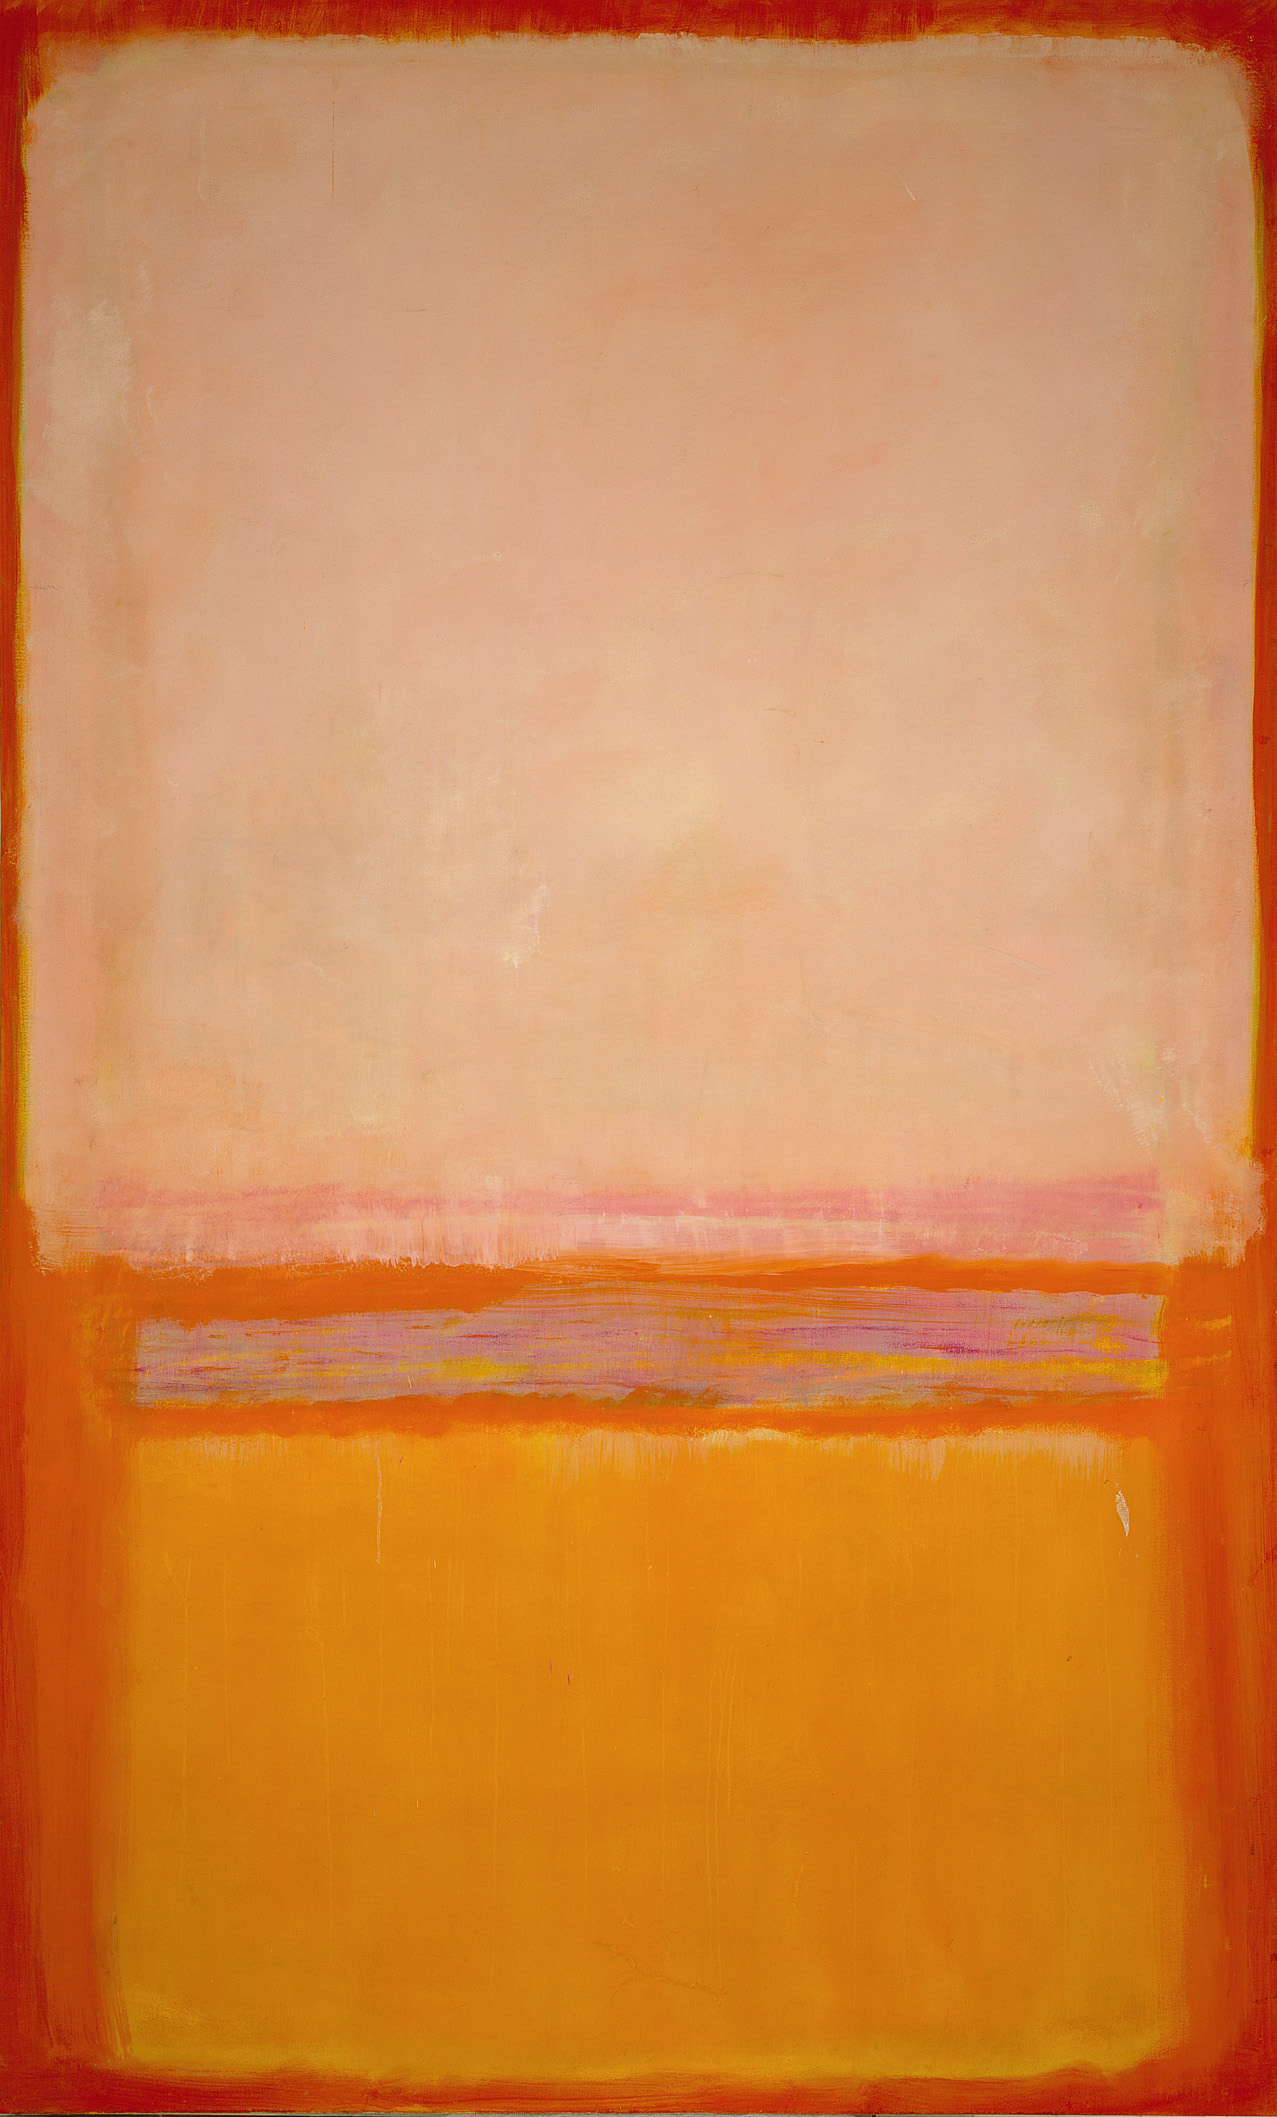 無題 by Mark Rothko - 1950 - 230.2 × 128.9 cm 